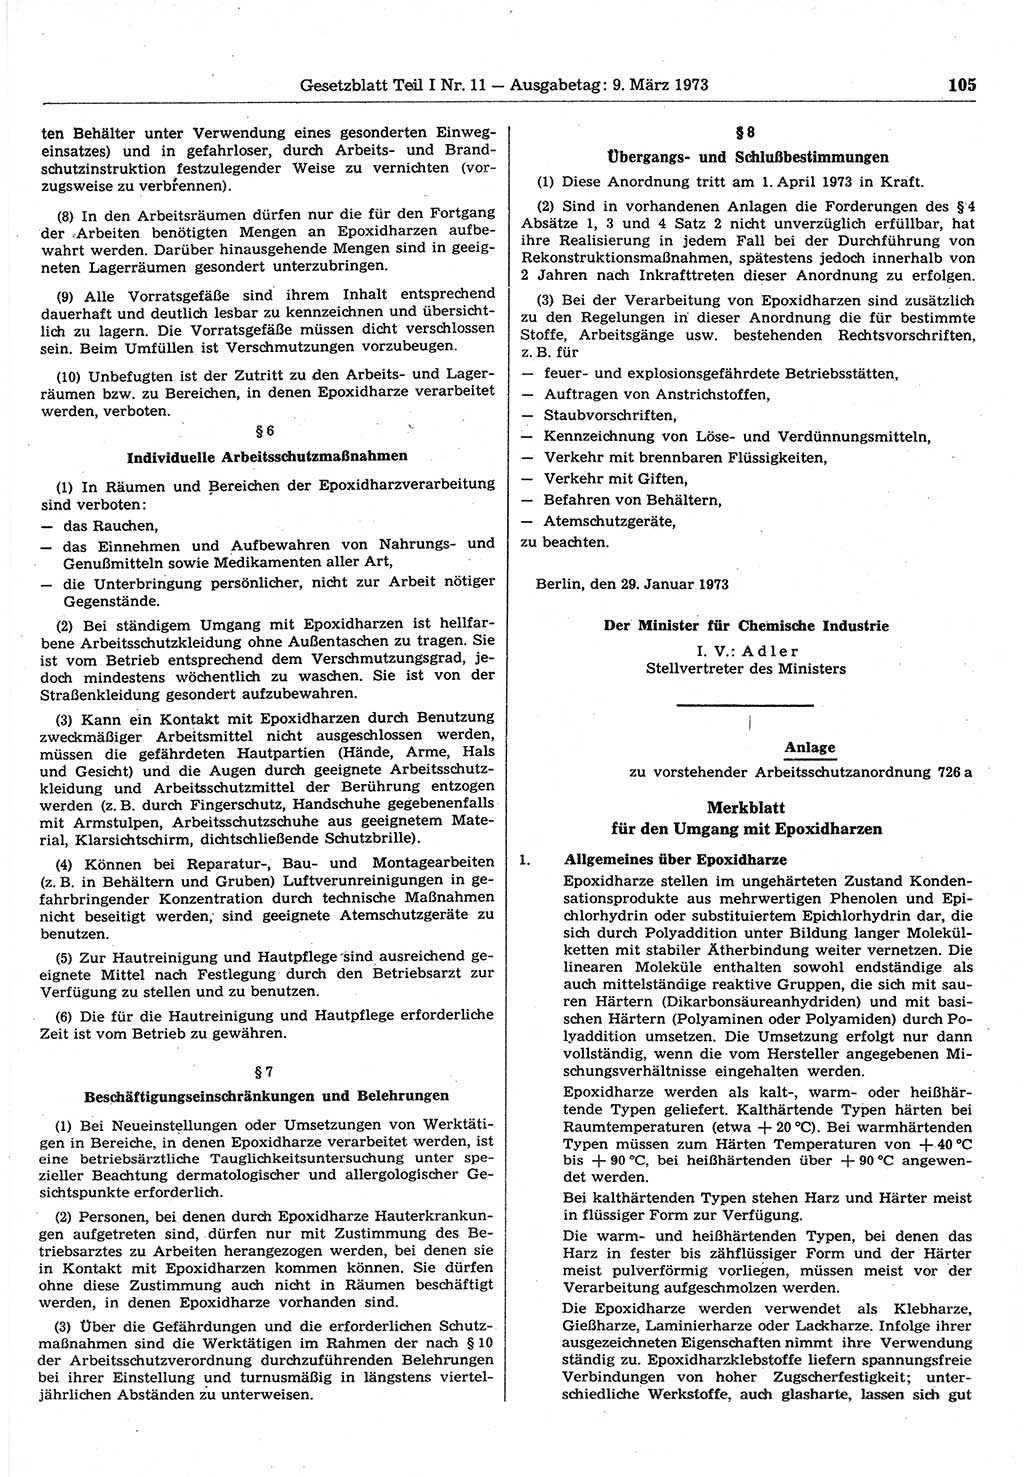 Gesetzblatt (GBl.) der Deutschen Demokratischen Republik (DDR) Teil Ⅰ 1973, Seite 105 (GBl. DDR Ⅰ 1973, S. 105)